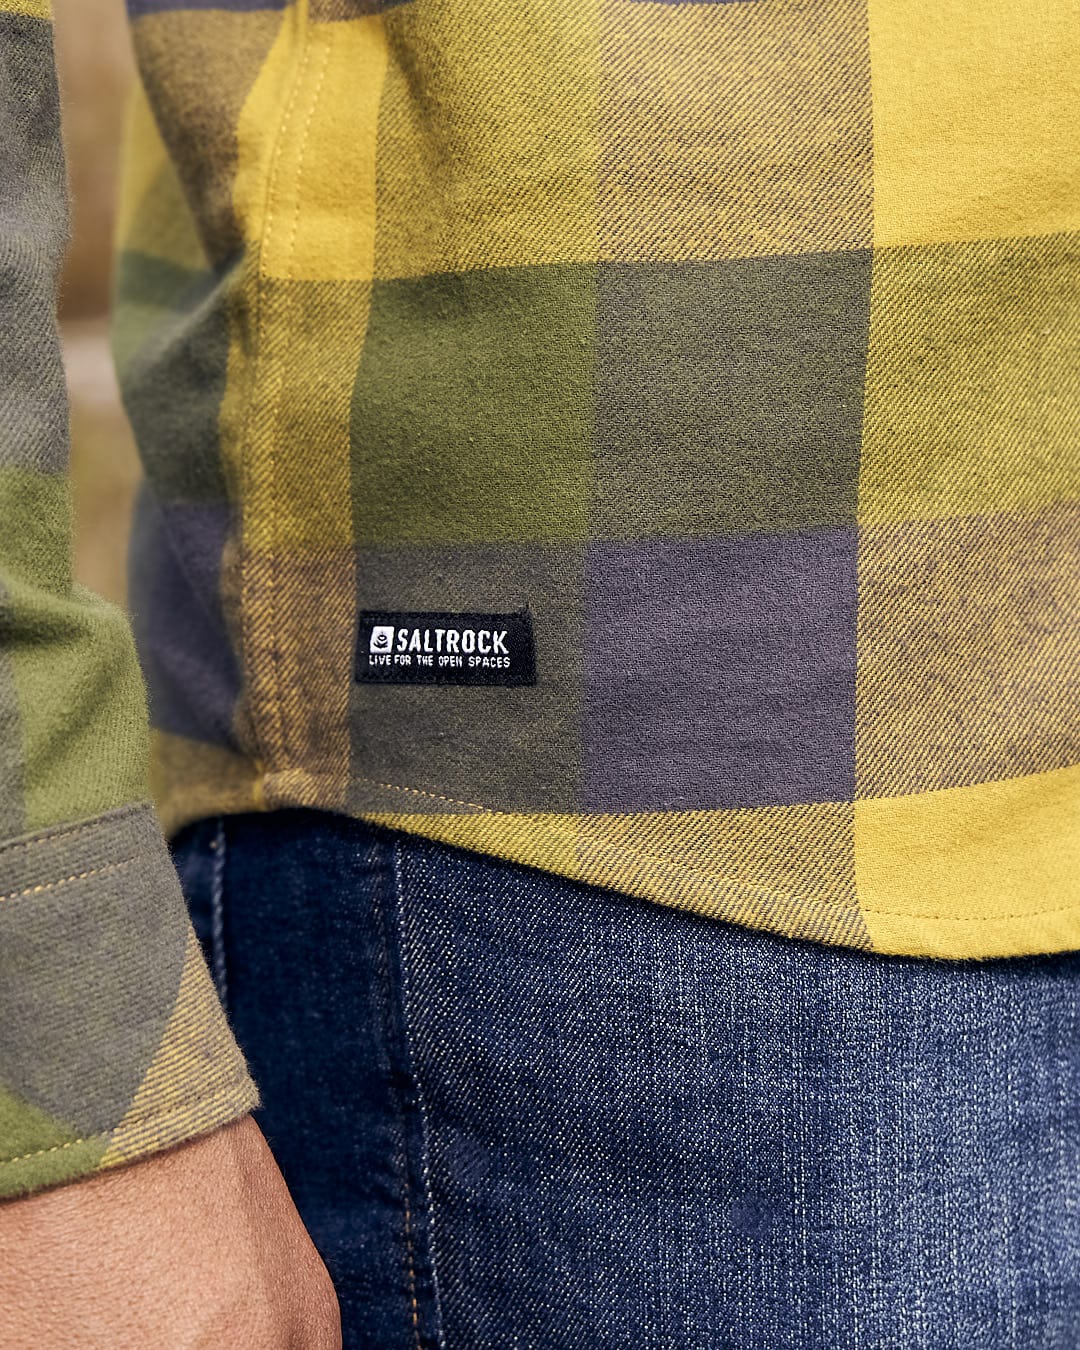 The back of a man wearing a Saltrock Mattie - Mens Long Sleeve Shirt - Yellow plaid shirt.